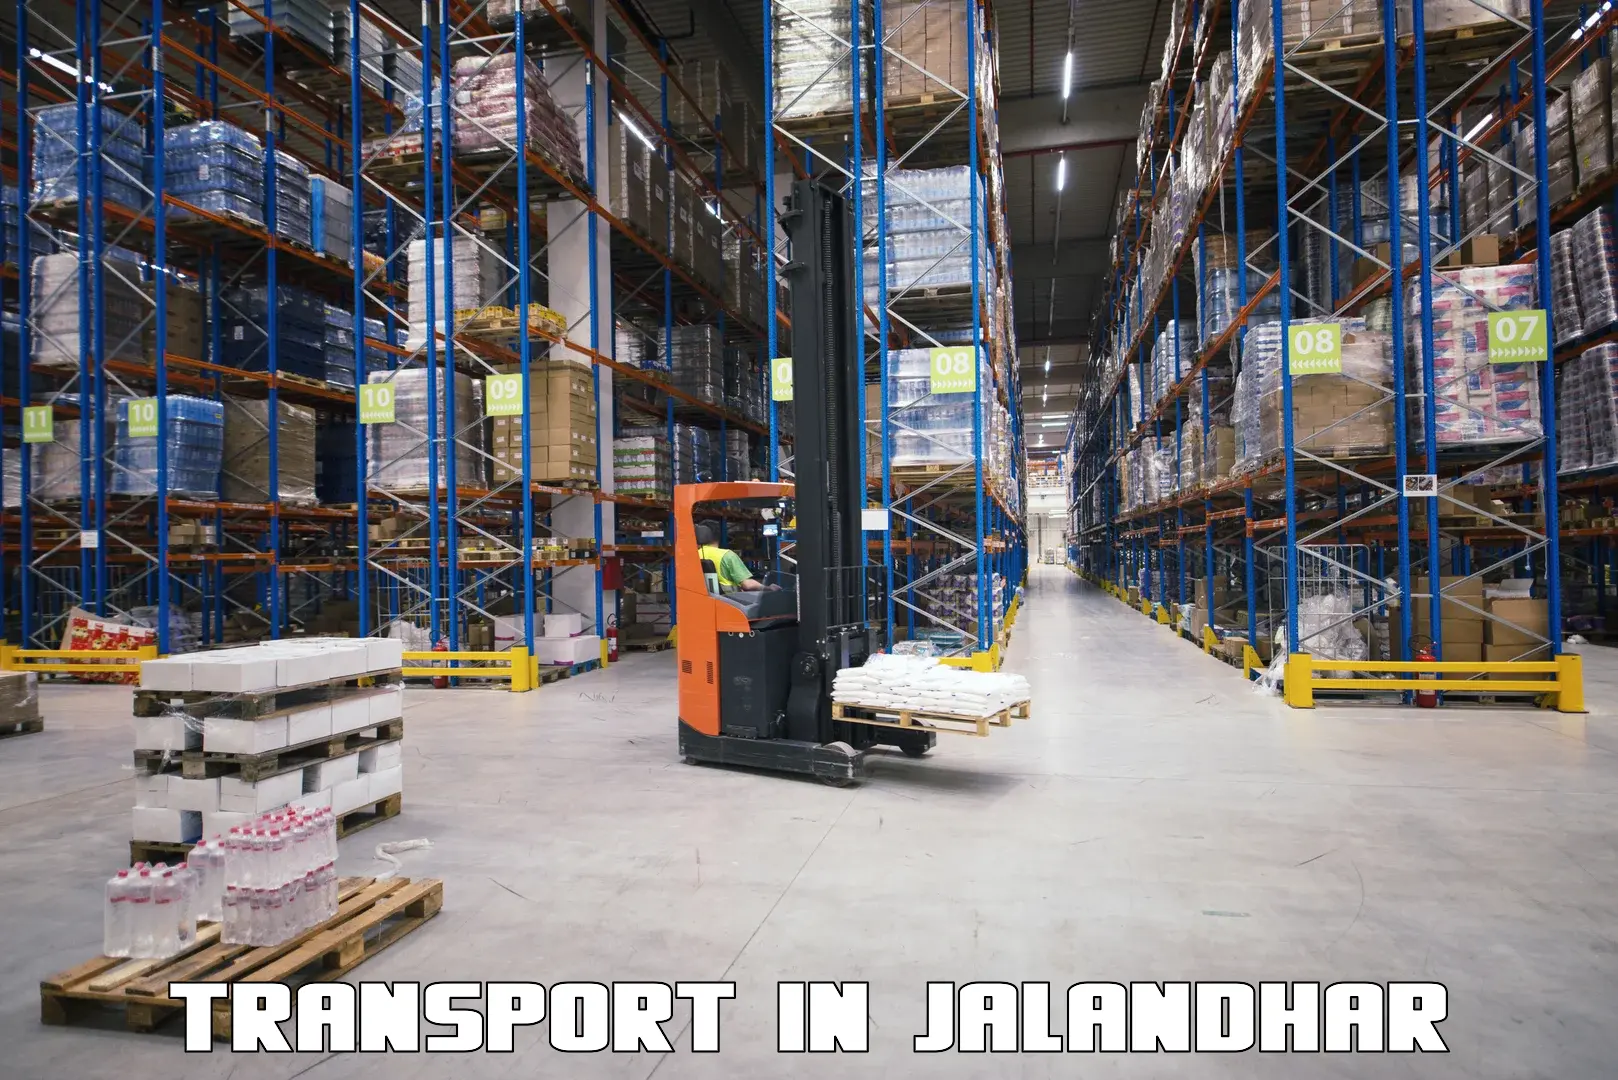 Nearest transport service in Jalandhar